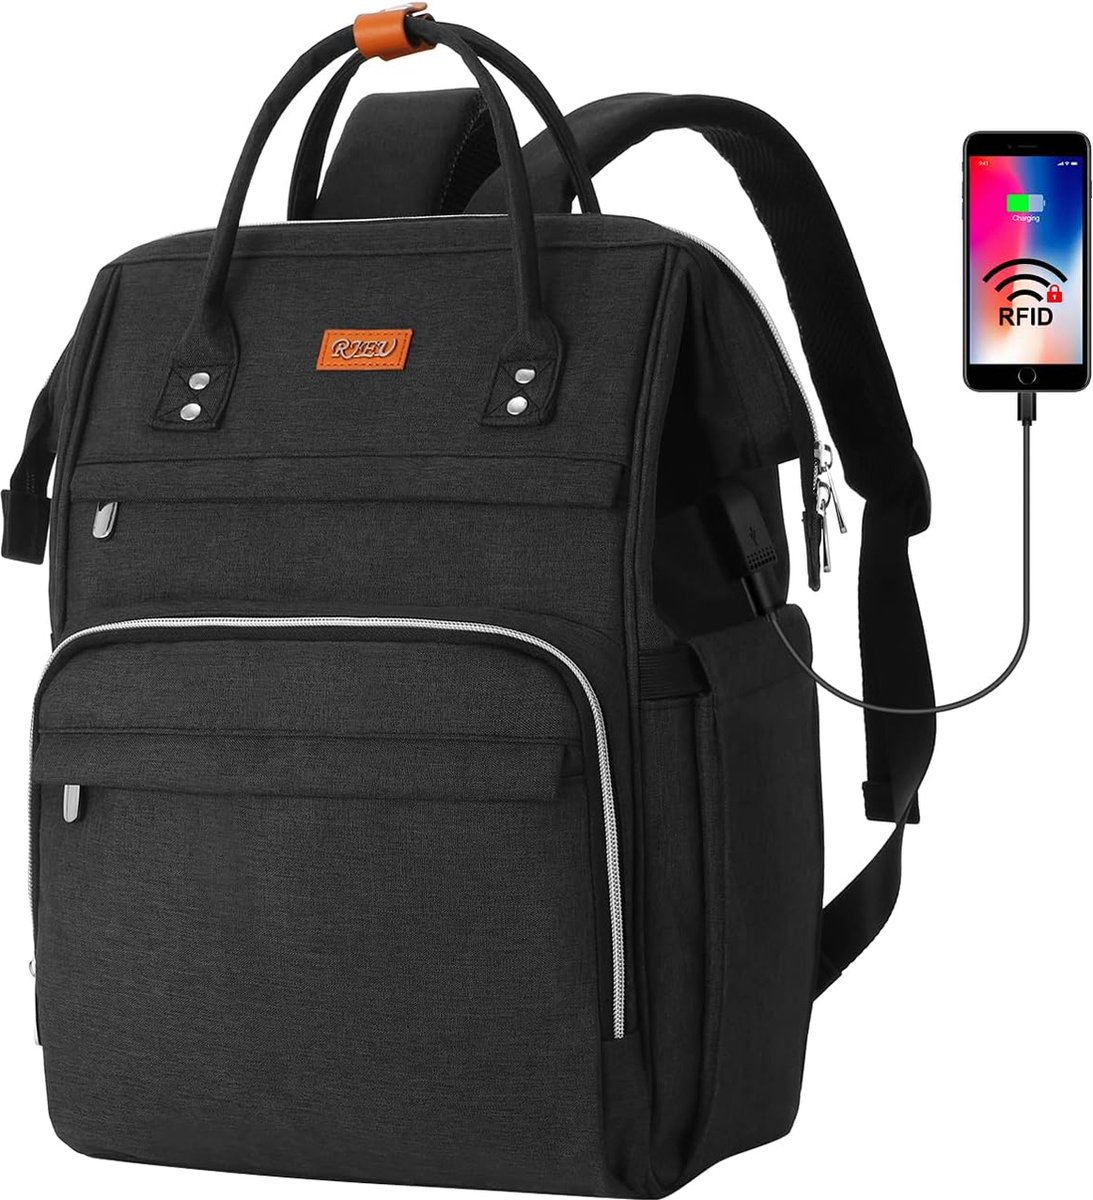 Rugzak met USB-poort - Zwart - 15.6 inch laptoptas - Voor school, werk, reizen - Rugtas met veel opbergruimte